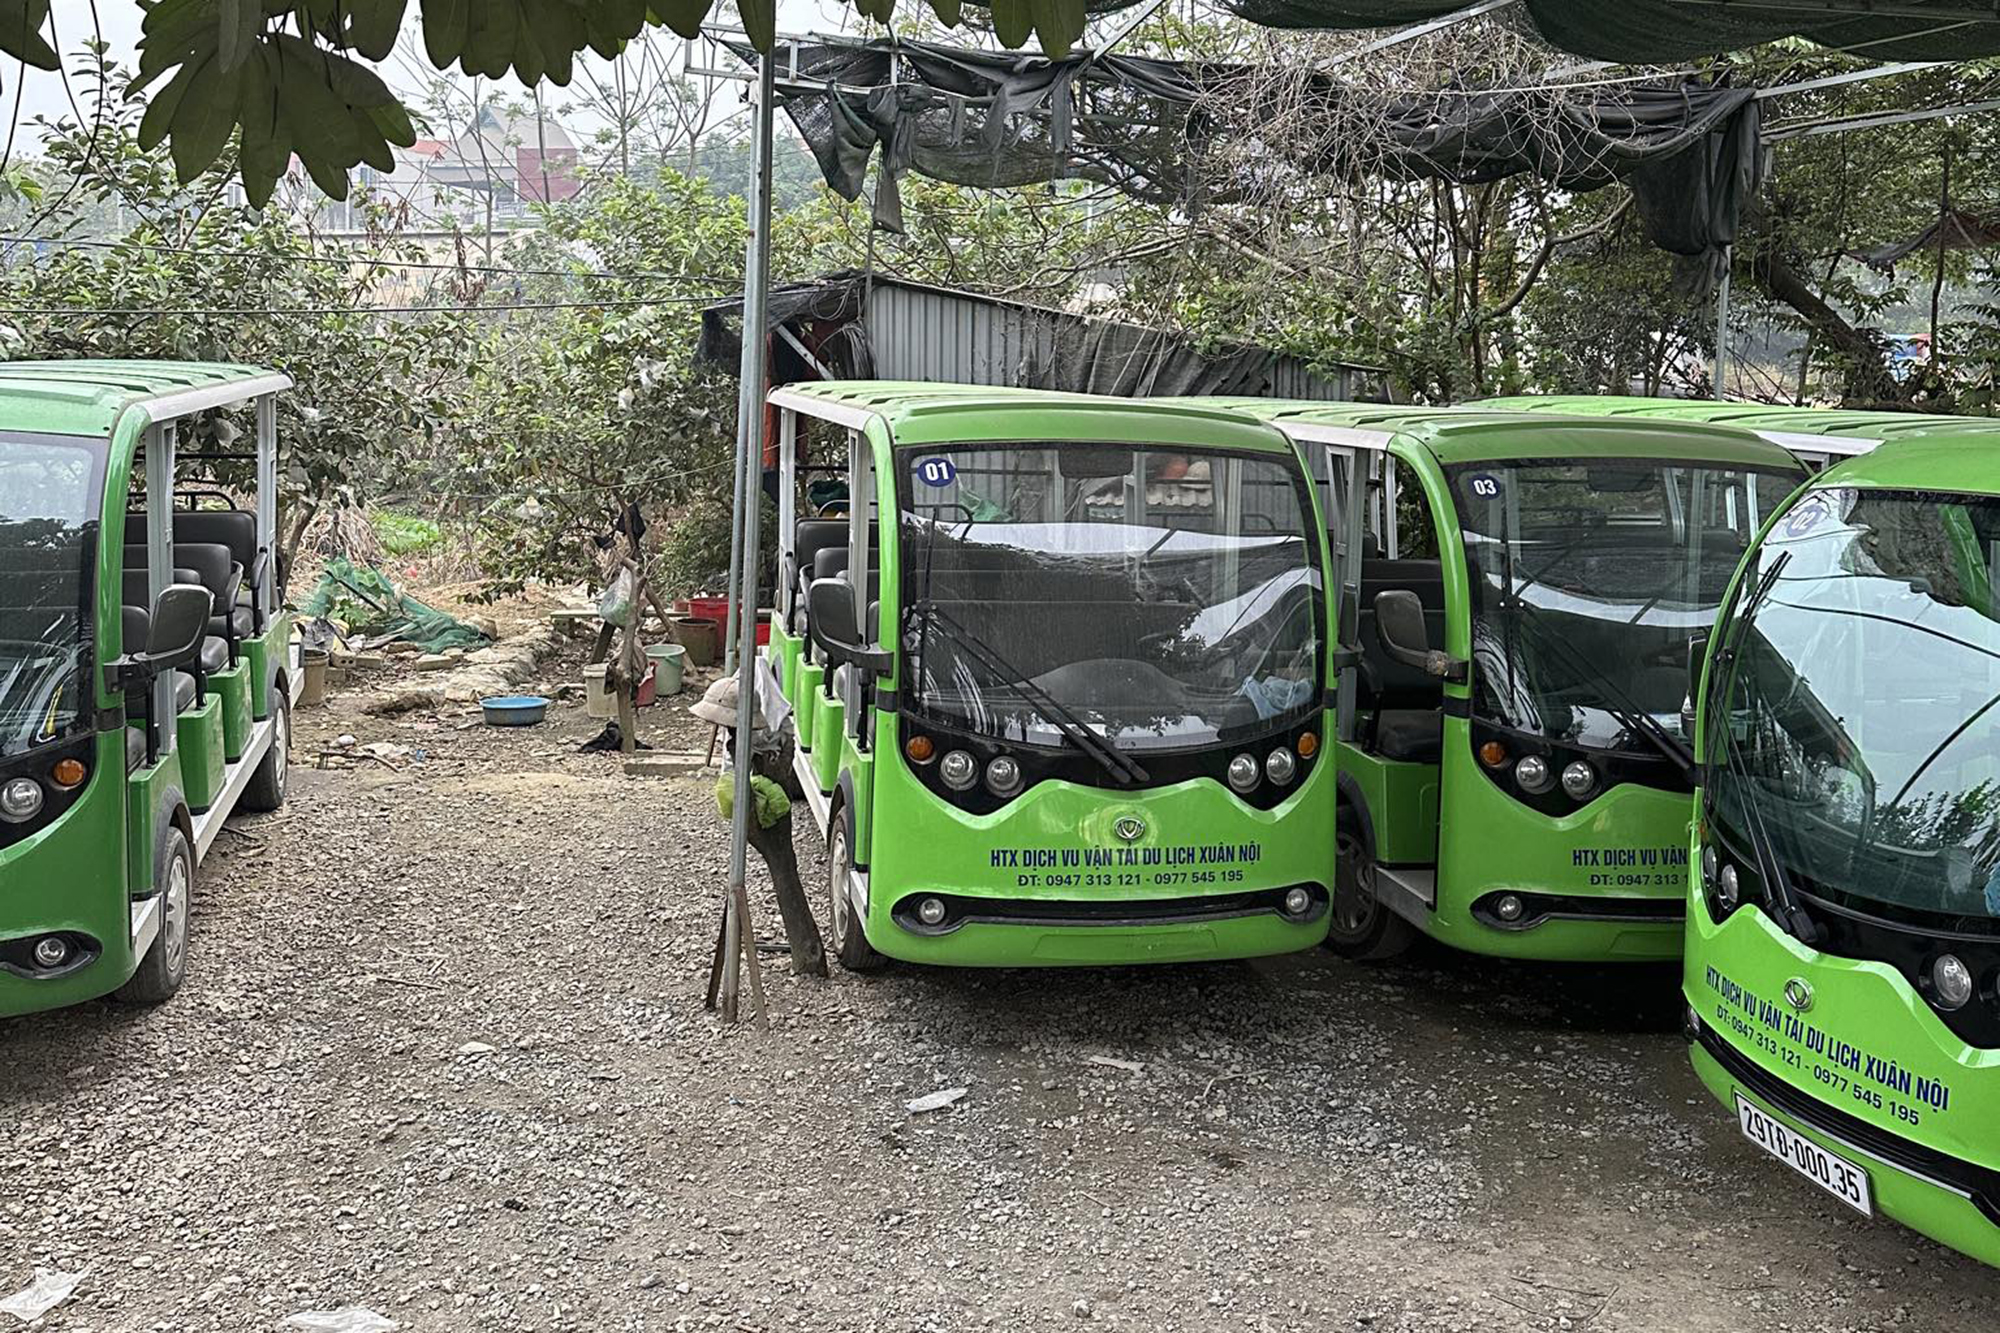 Hà Nội: Bát nháo xe điện không biển số ở Đường Lâm- Ảnh 1.